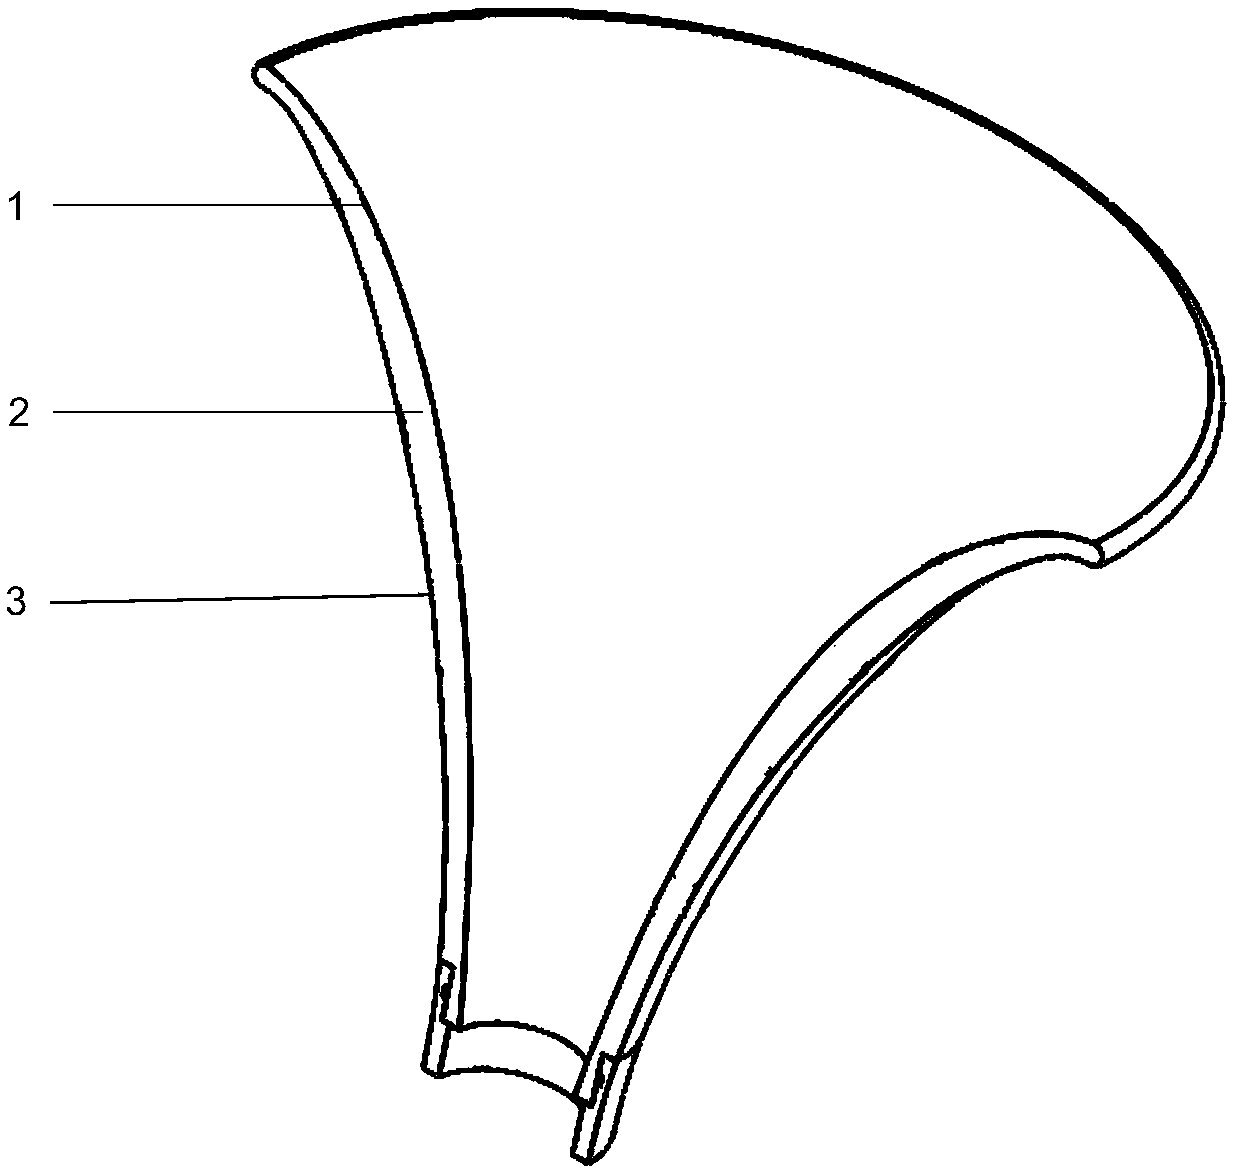 Horn and horn loudspeaker,